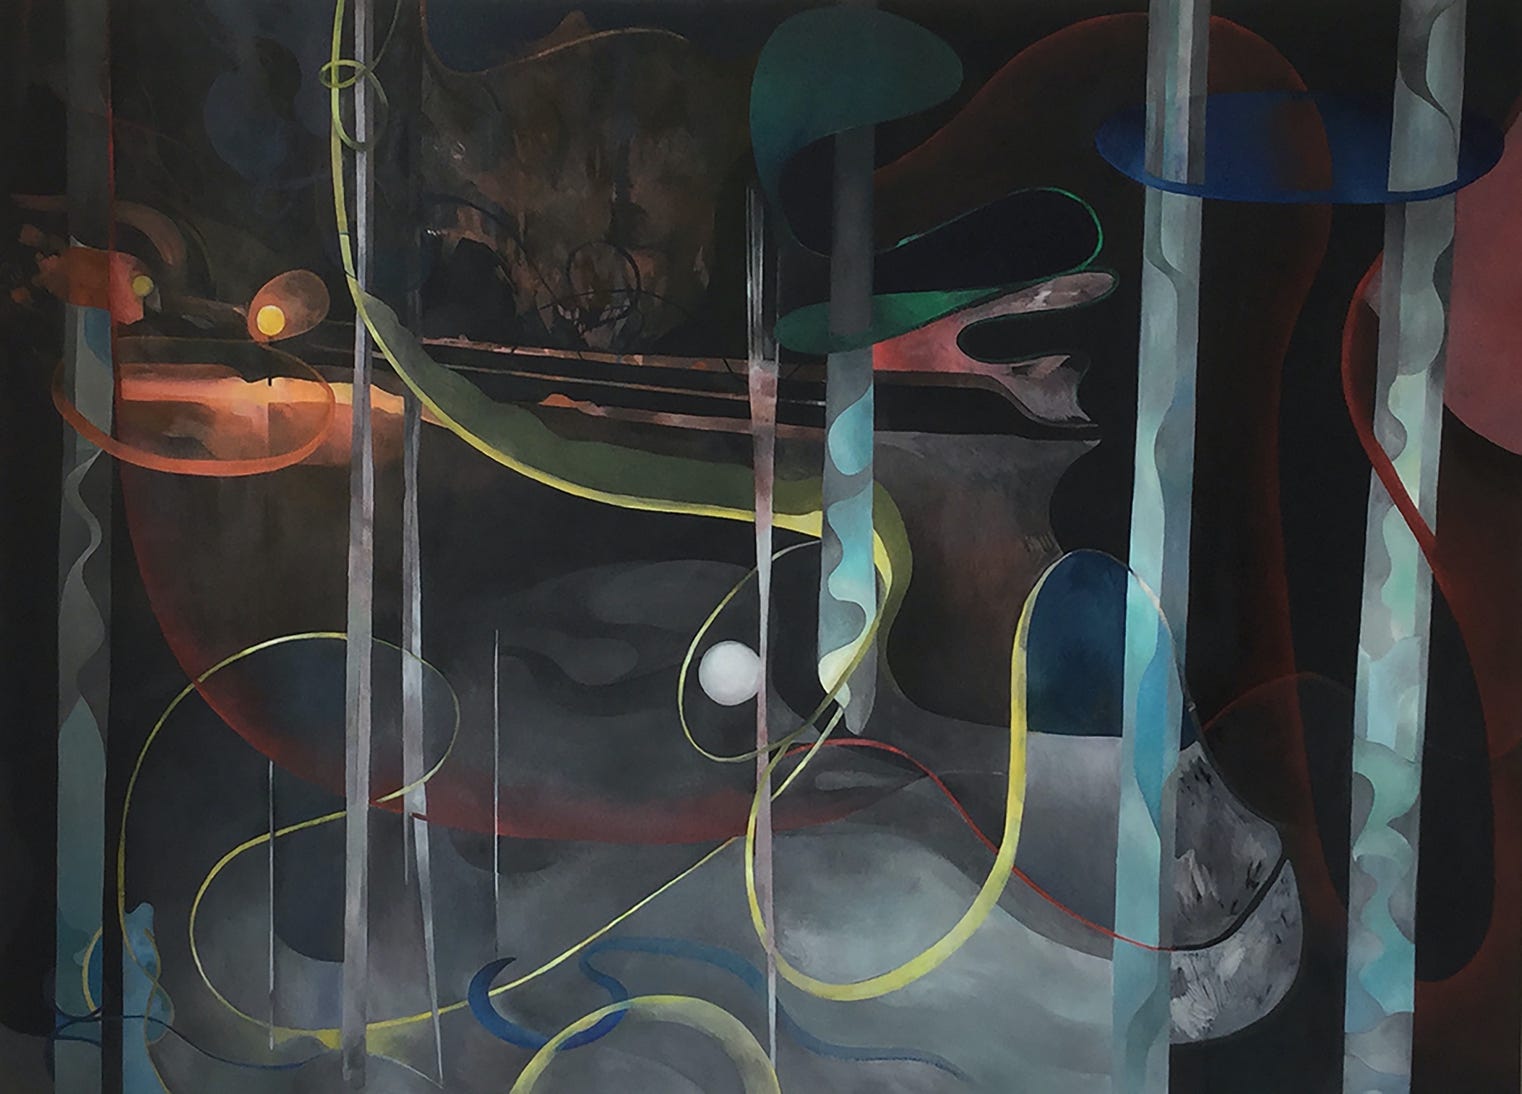 Synchronicity II, 2017 – 130 cm x 95 cm, oil on canvas